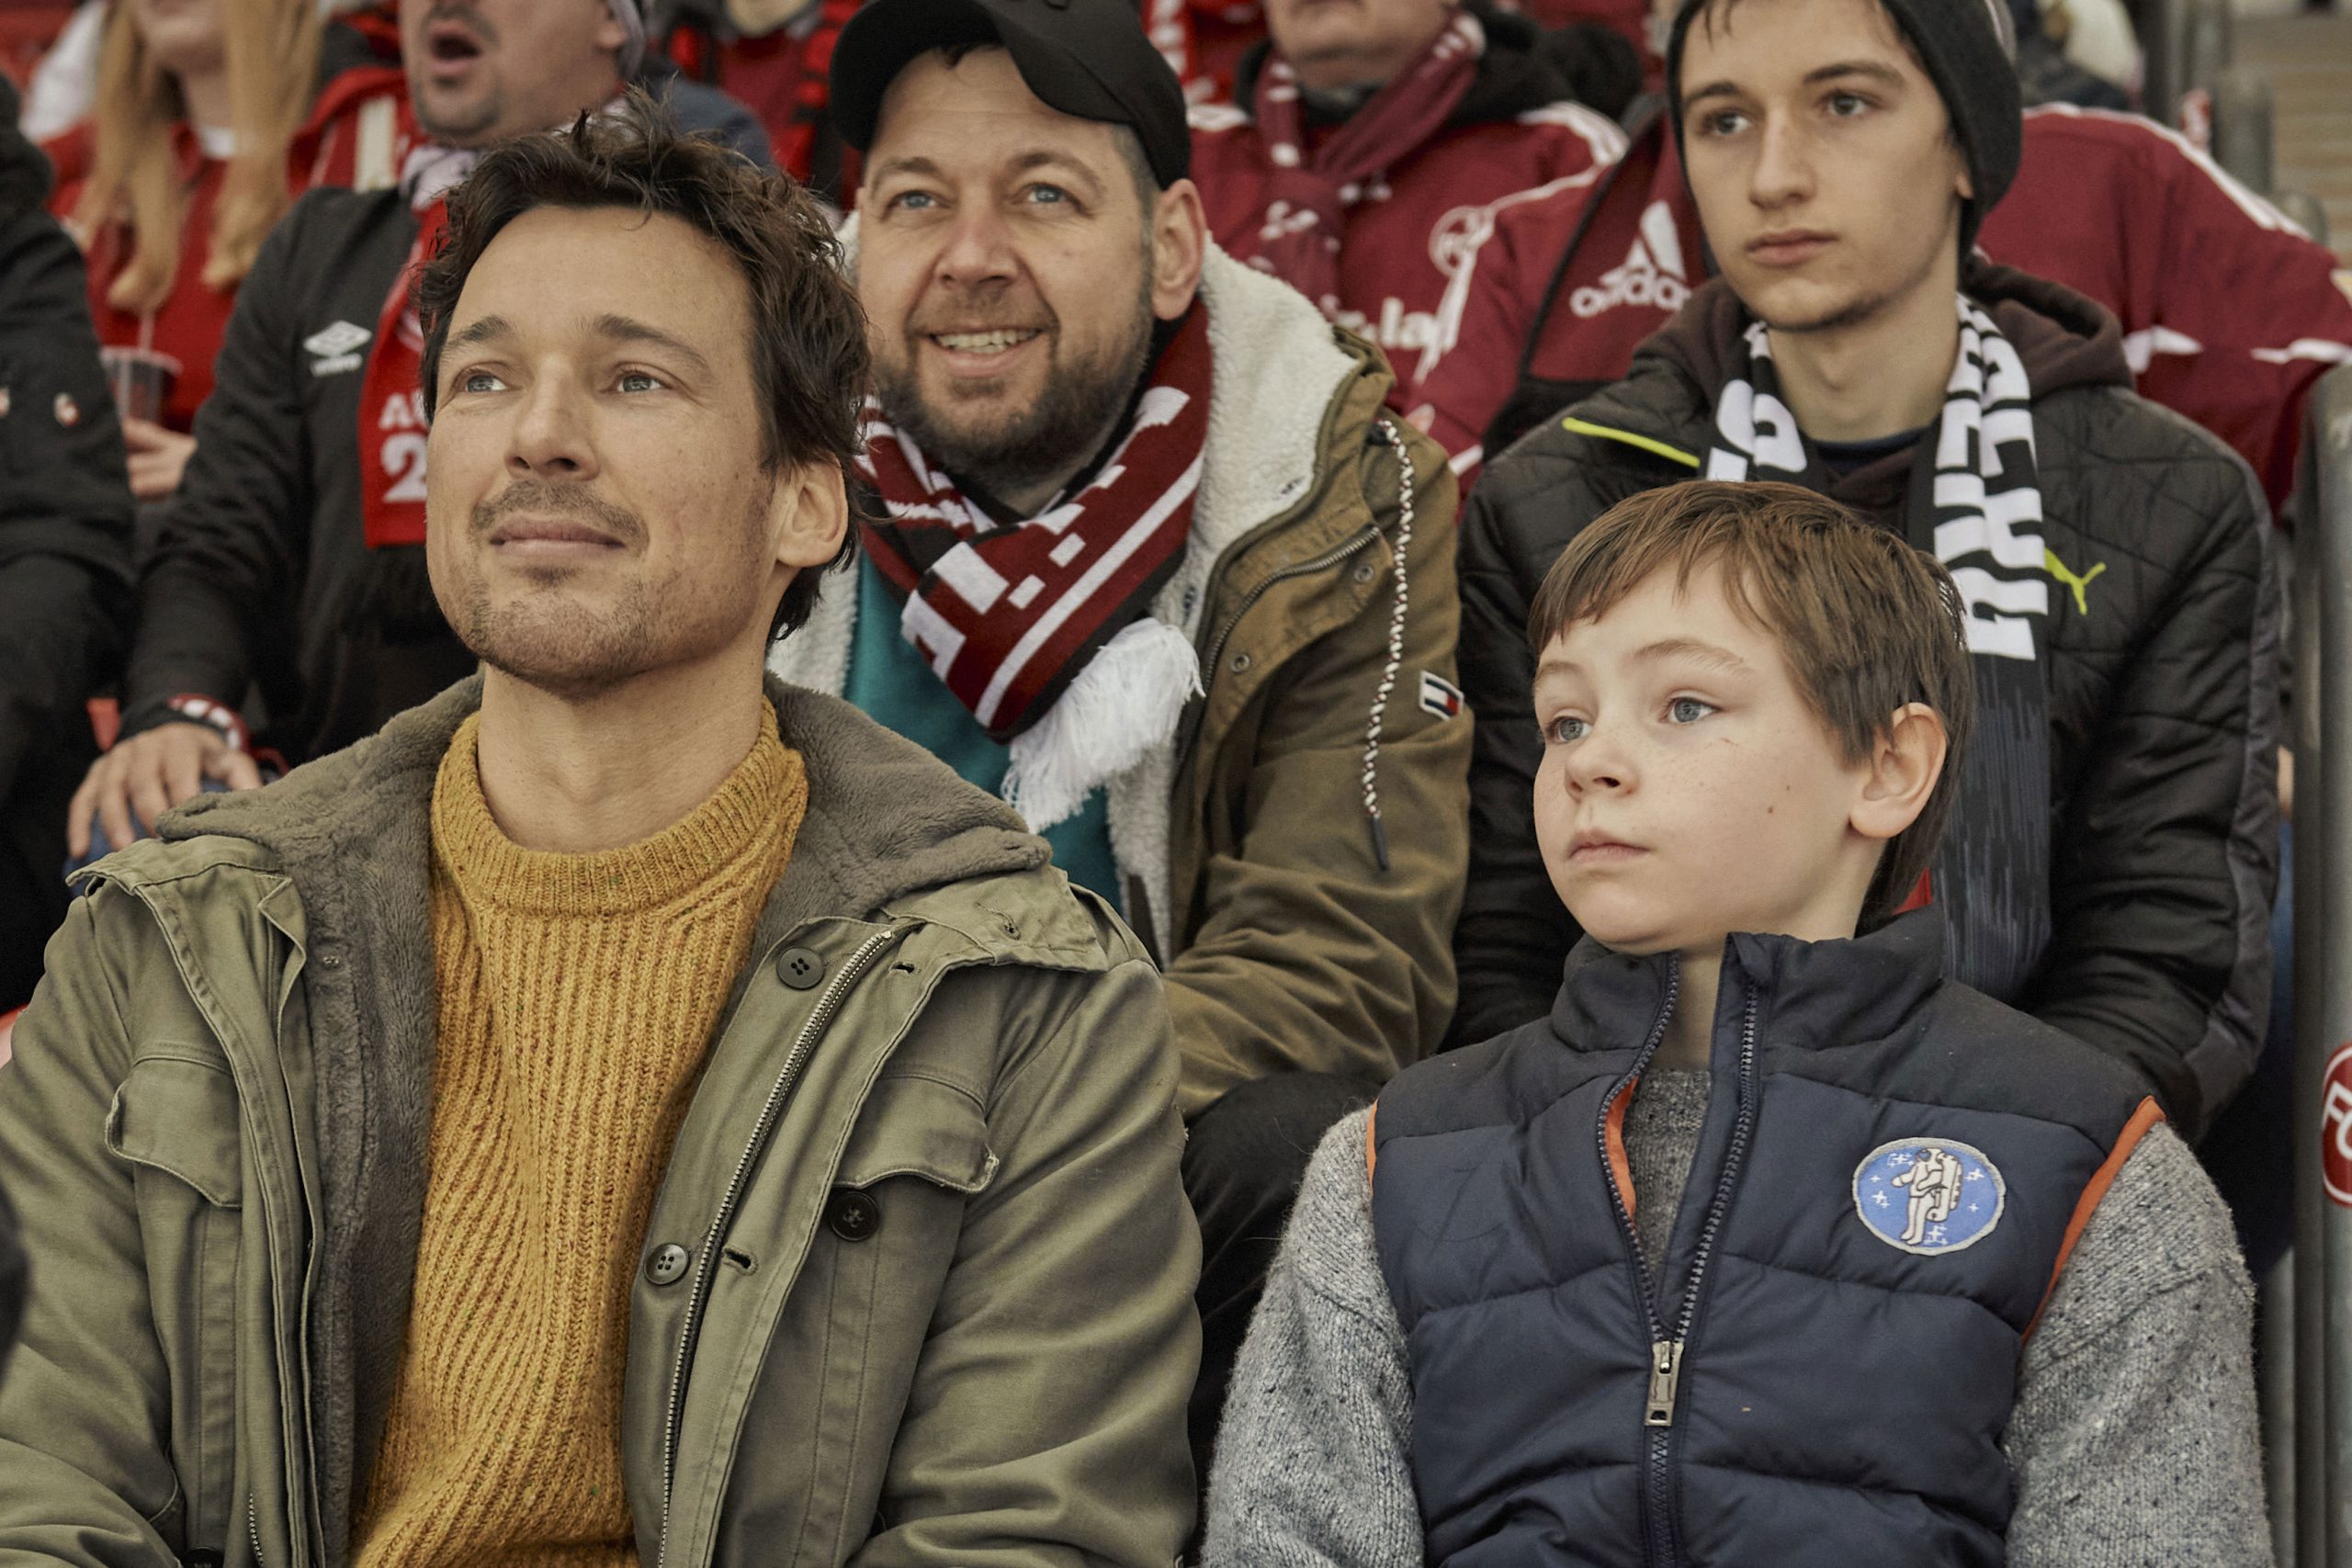 Florian David Fitz als Mirco mit seinem Sohn Jason (gespielt von Cecilio Andresen) im Stadion. Dahinter sitzen der "echte" Mirco und Jason, auf deren Geschichte der Film beruht. © Leonine Studios